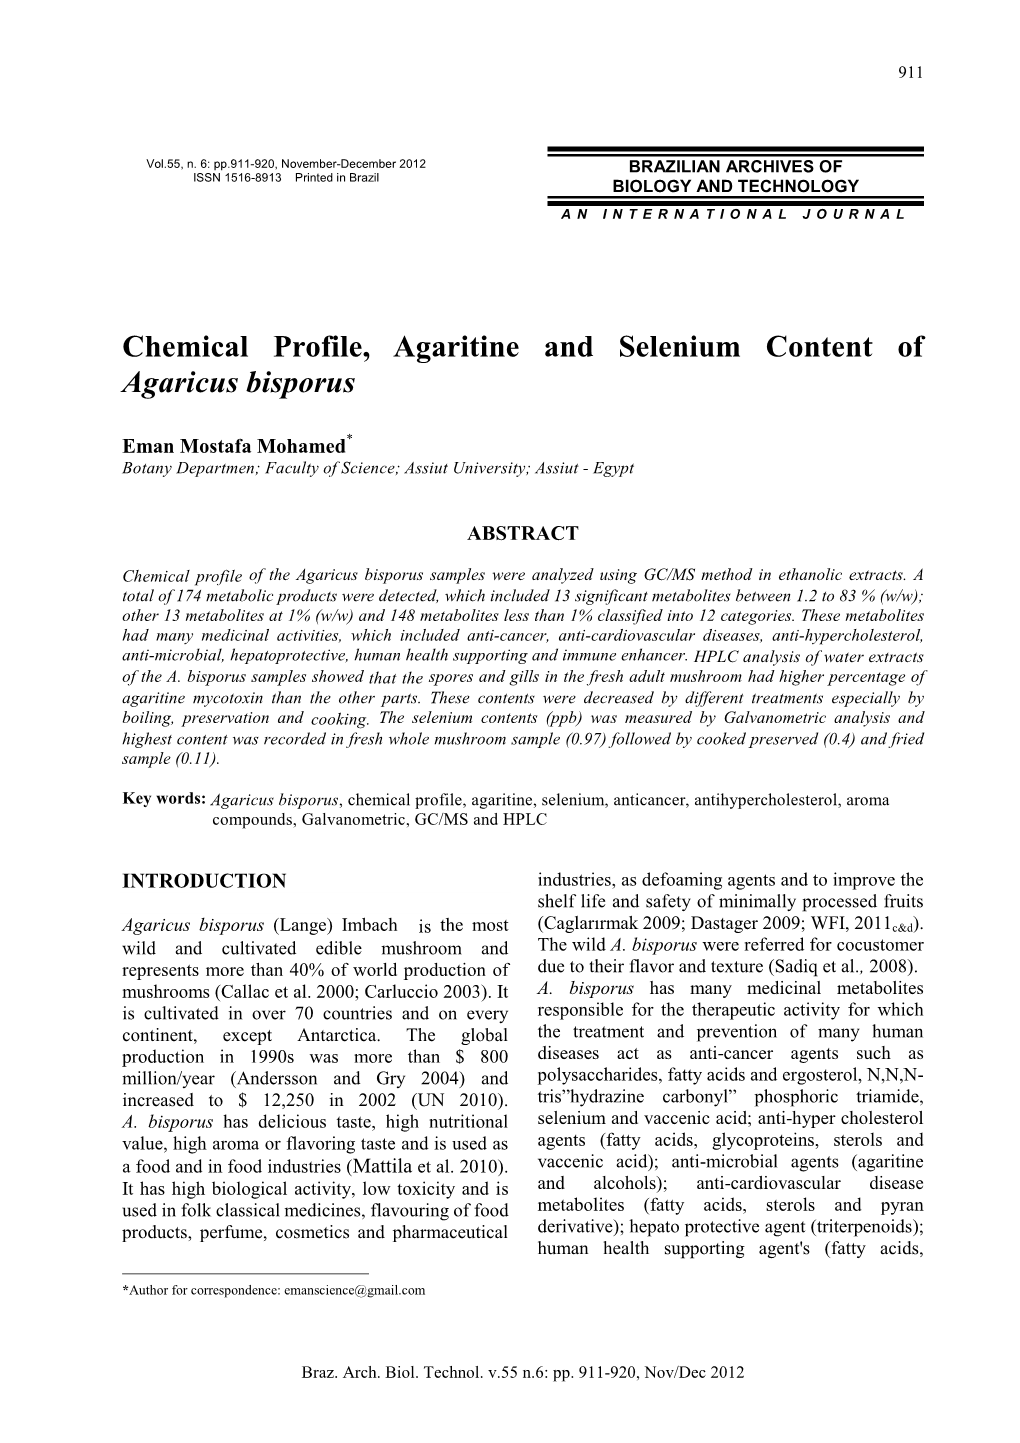 Chemical Profile, Agaritine and Selenium Content of Agaricus Bisporus